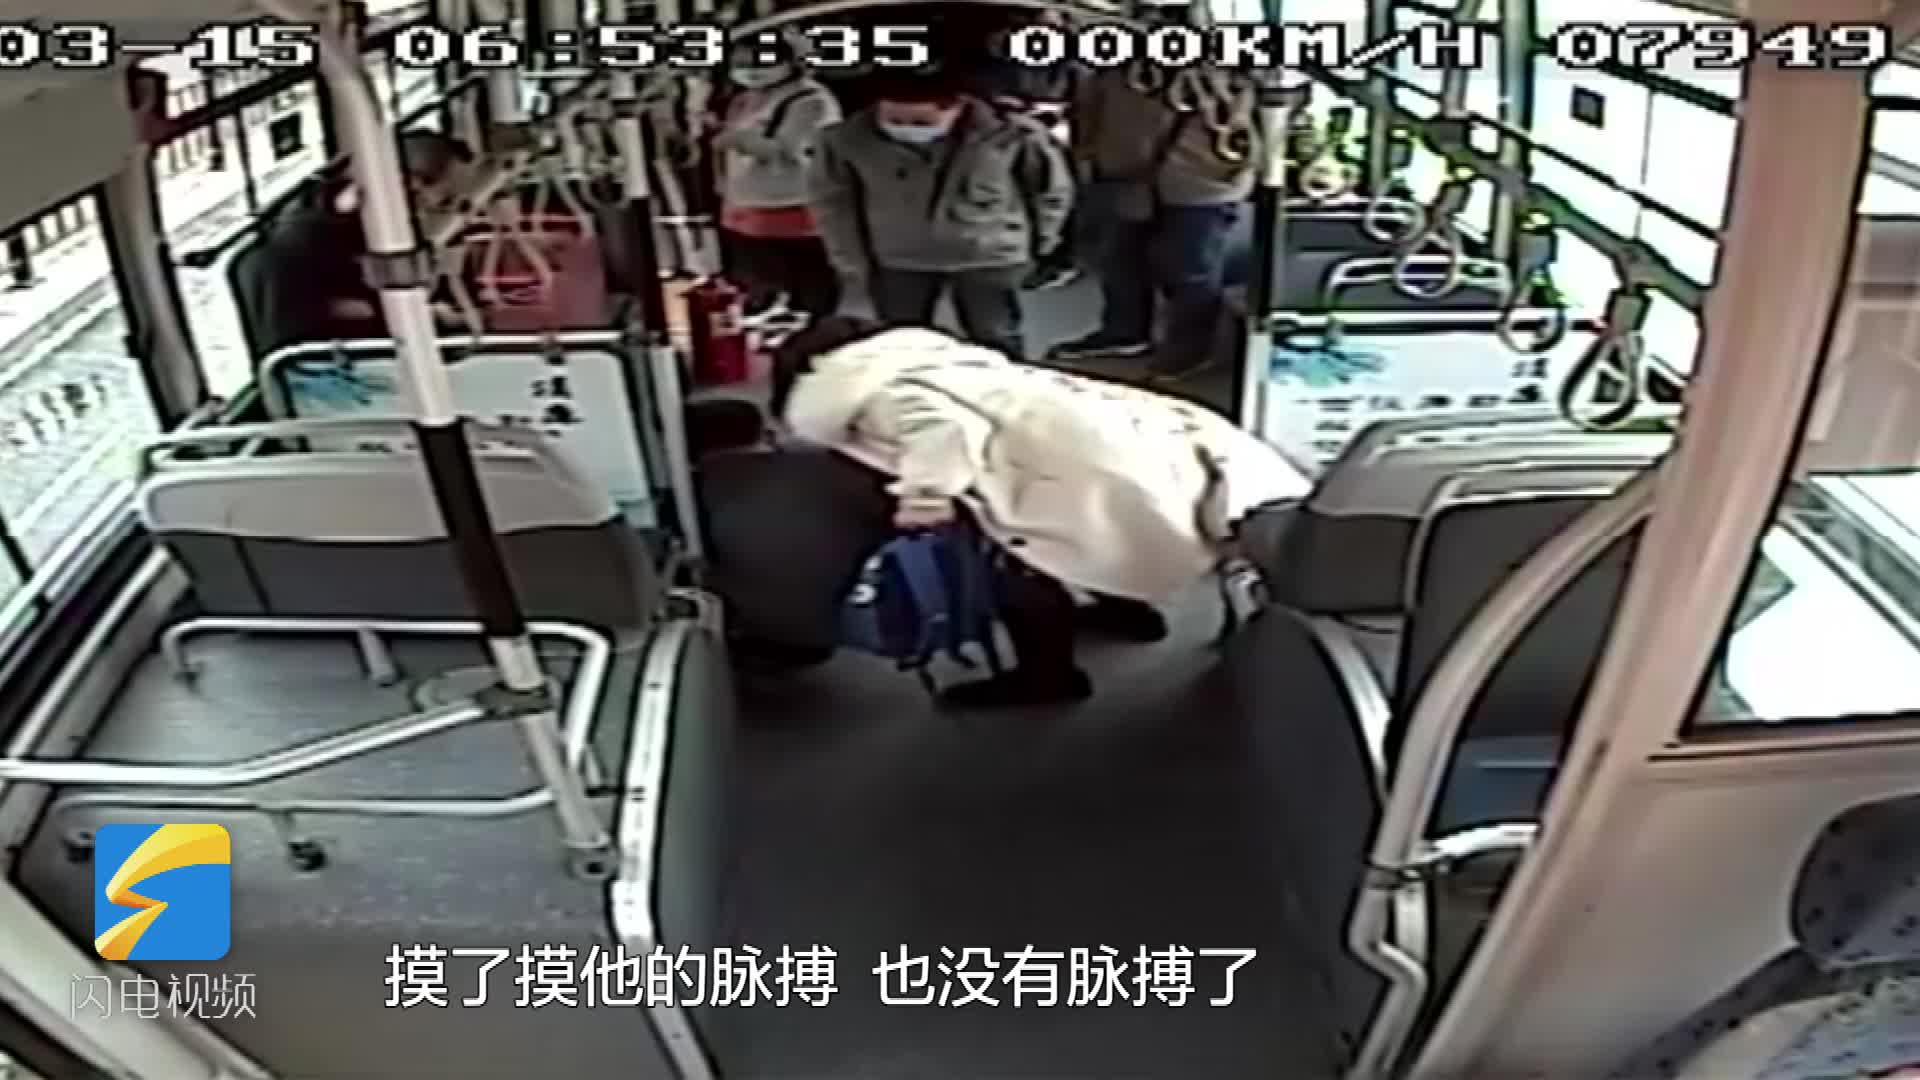 济南一男子公交车上突发疾病晕倒 驾驶员乘客紧急救助